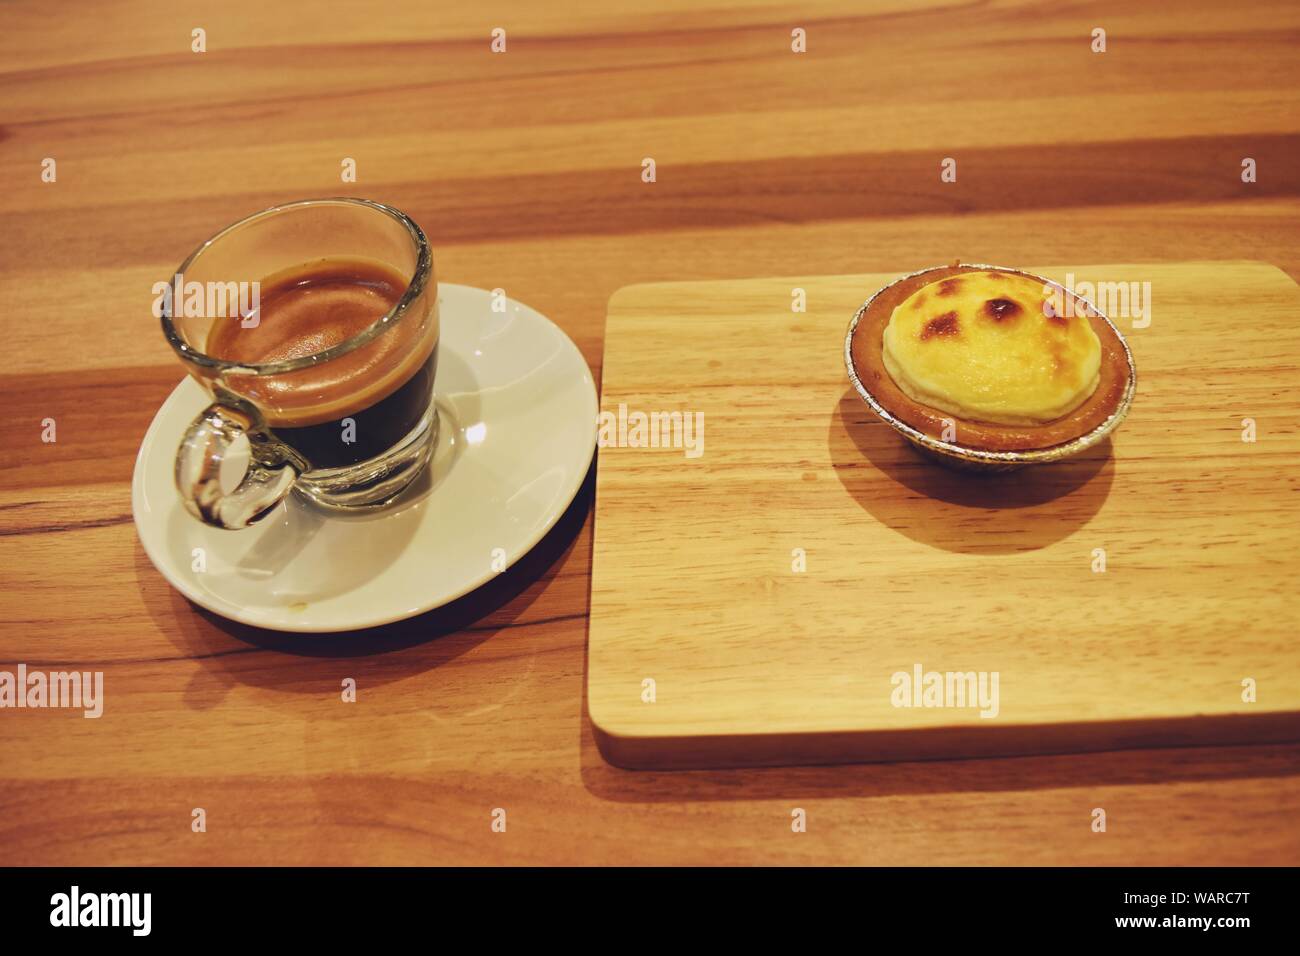 Tarte au fromage blanc sur plateau en bois et Café espresso en verre transparent sur table marron Banque D'Images